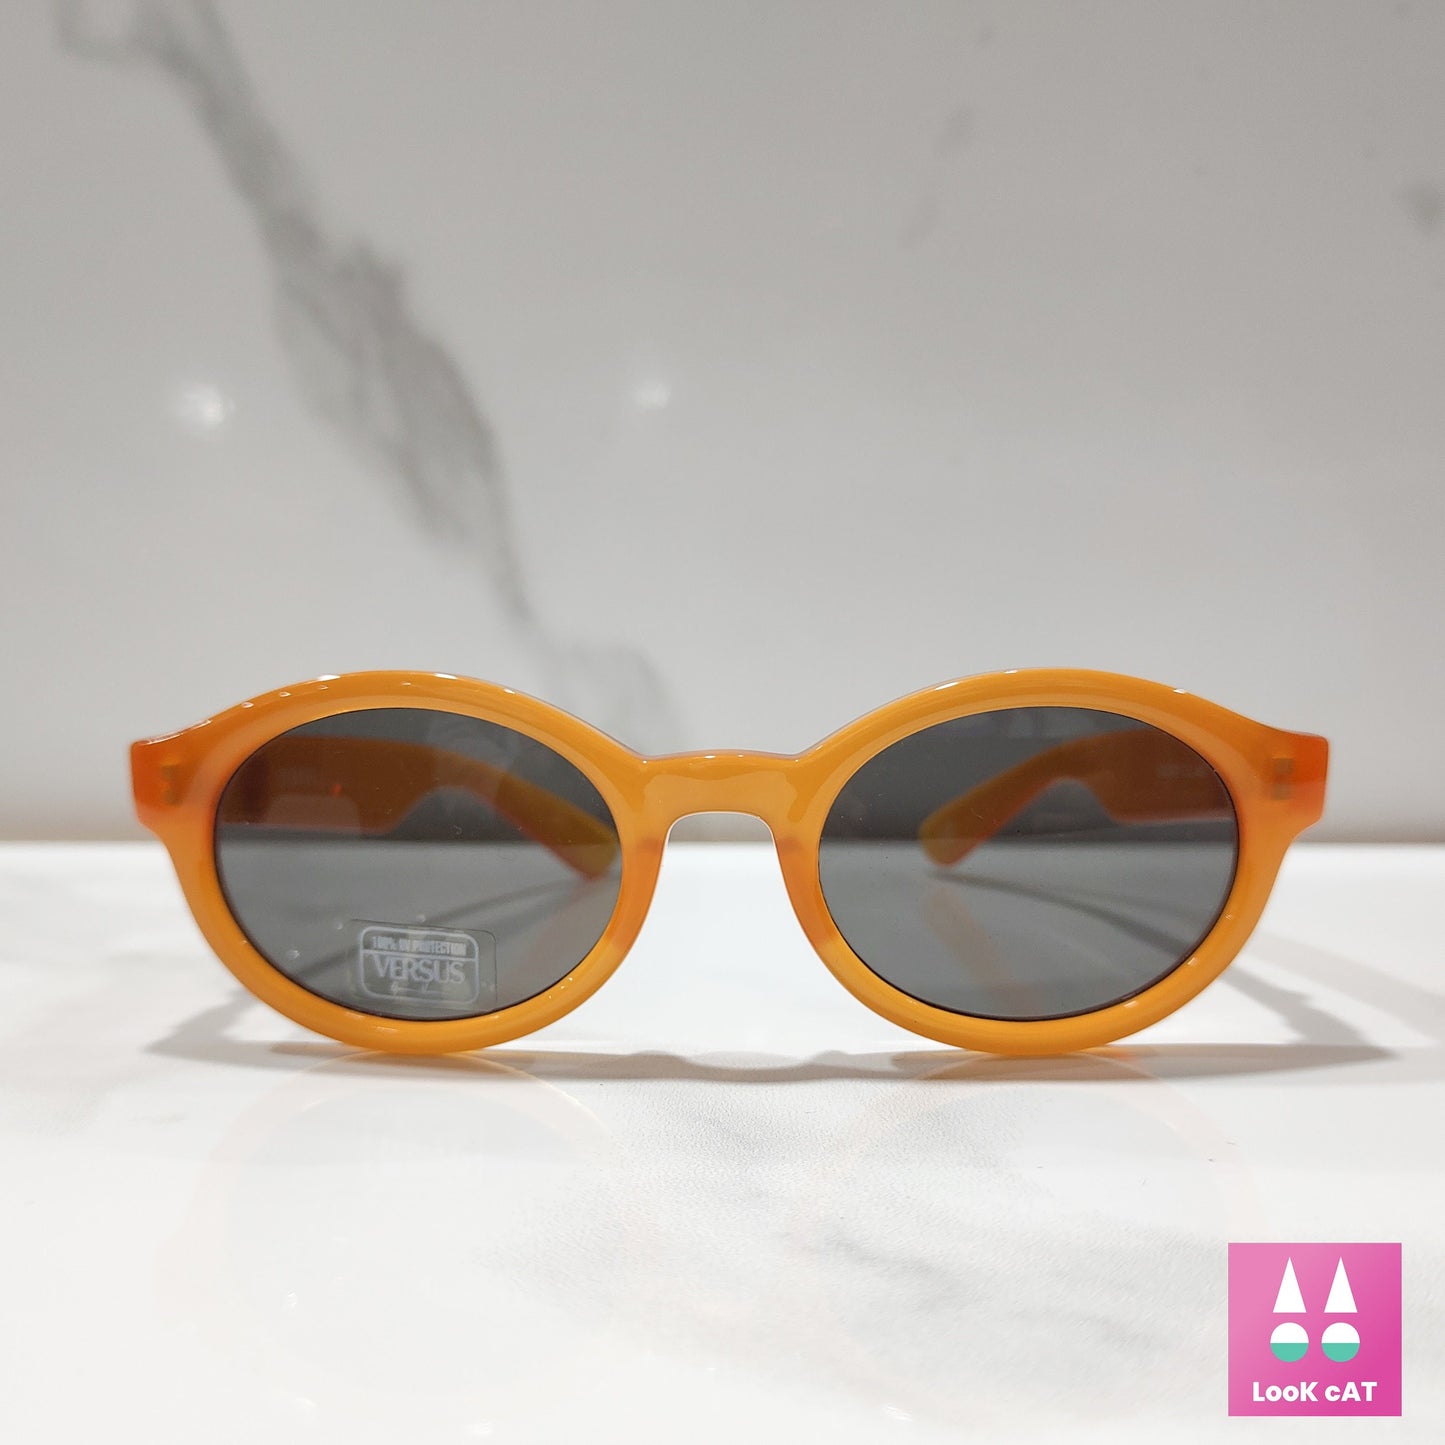 Versus Gianni Versace mod EF 9 occhiali da sole lunetta brille Summer medusa vintage